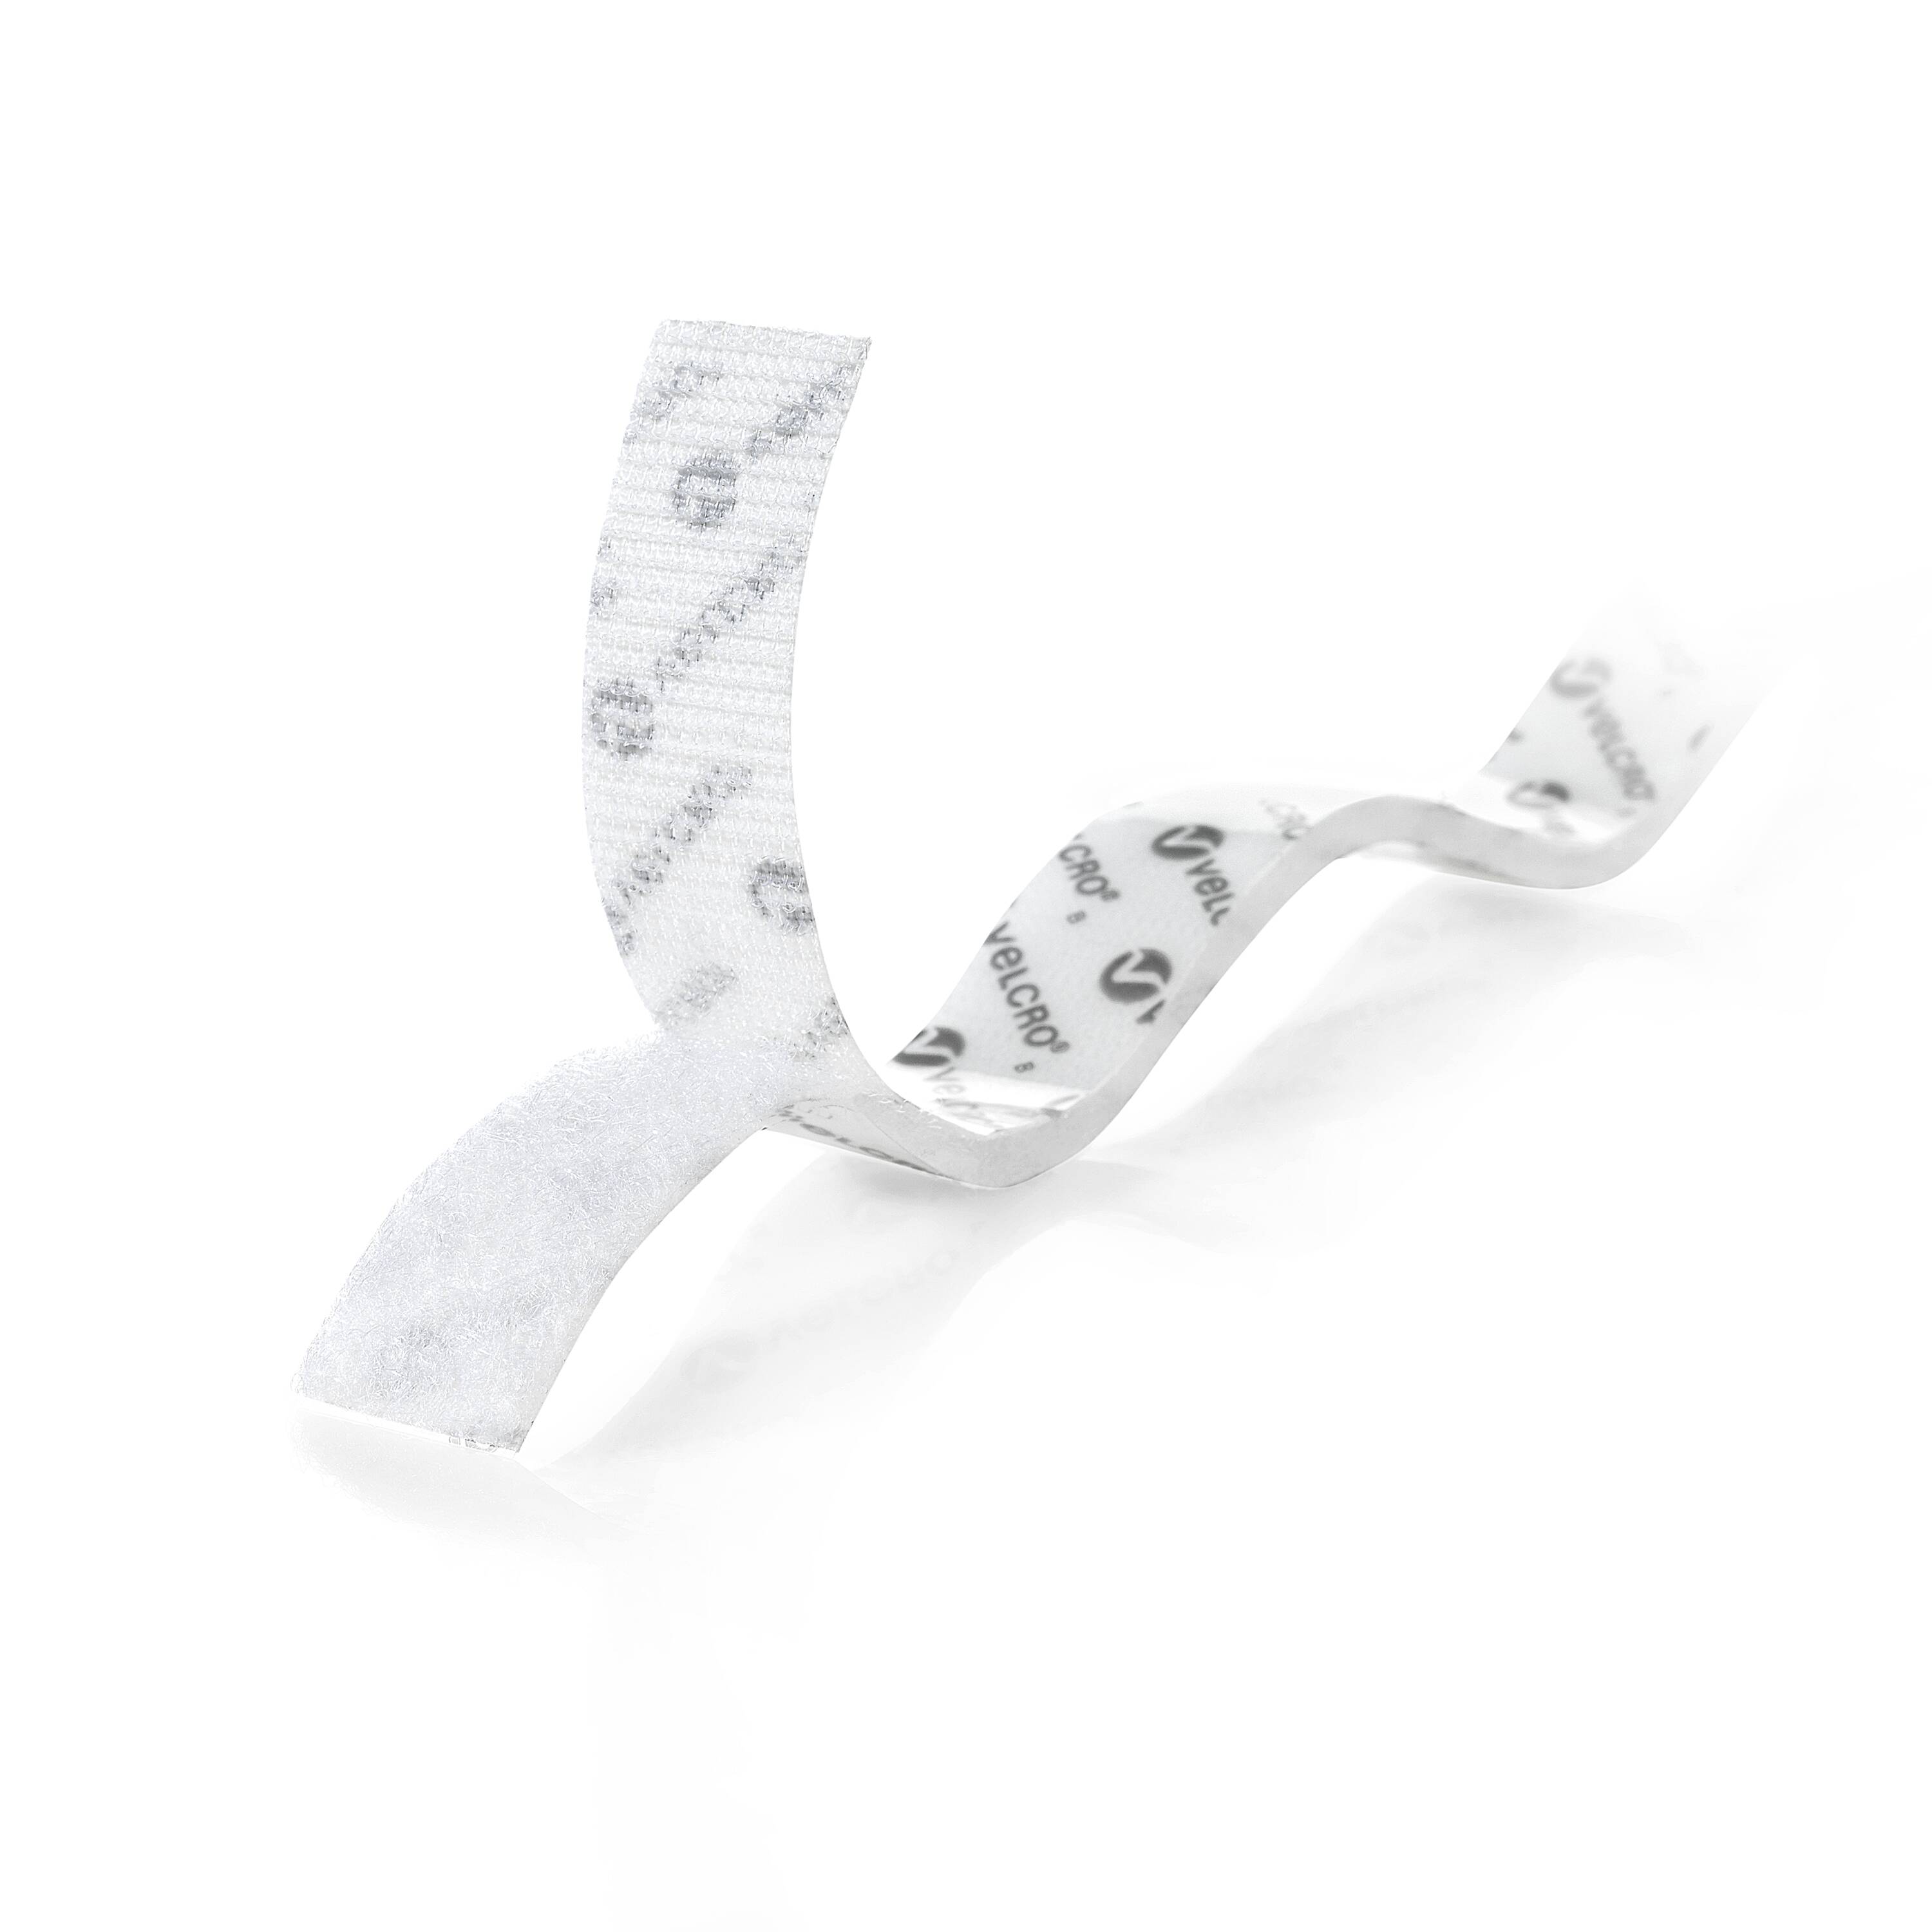 Velcro® Brand Combo Strips Bulk Pack - 1 x 75', White S-23101W